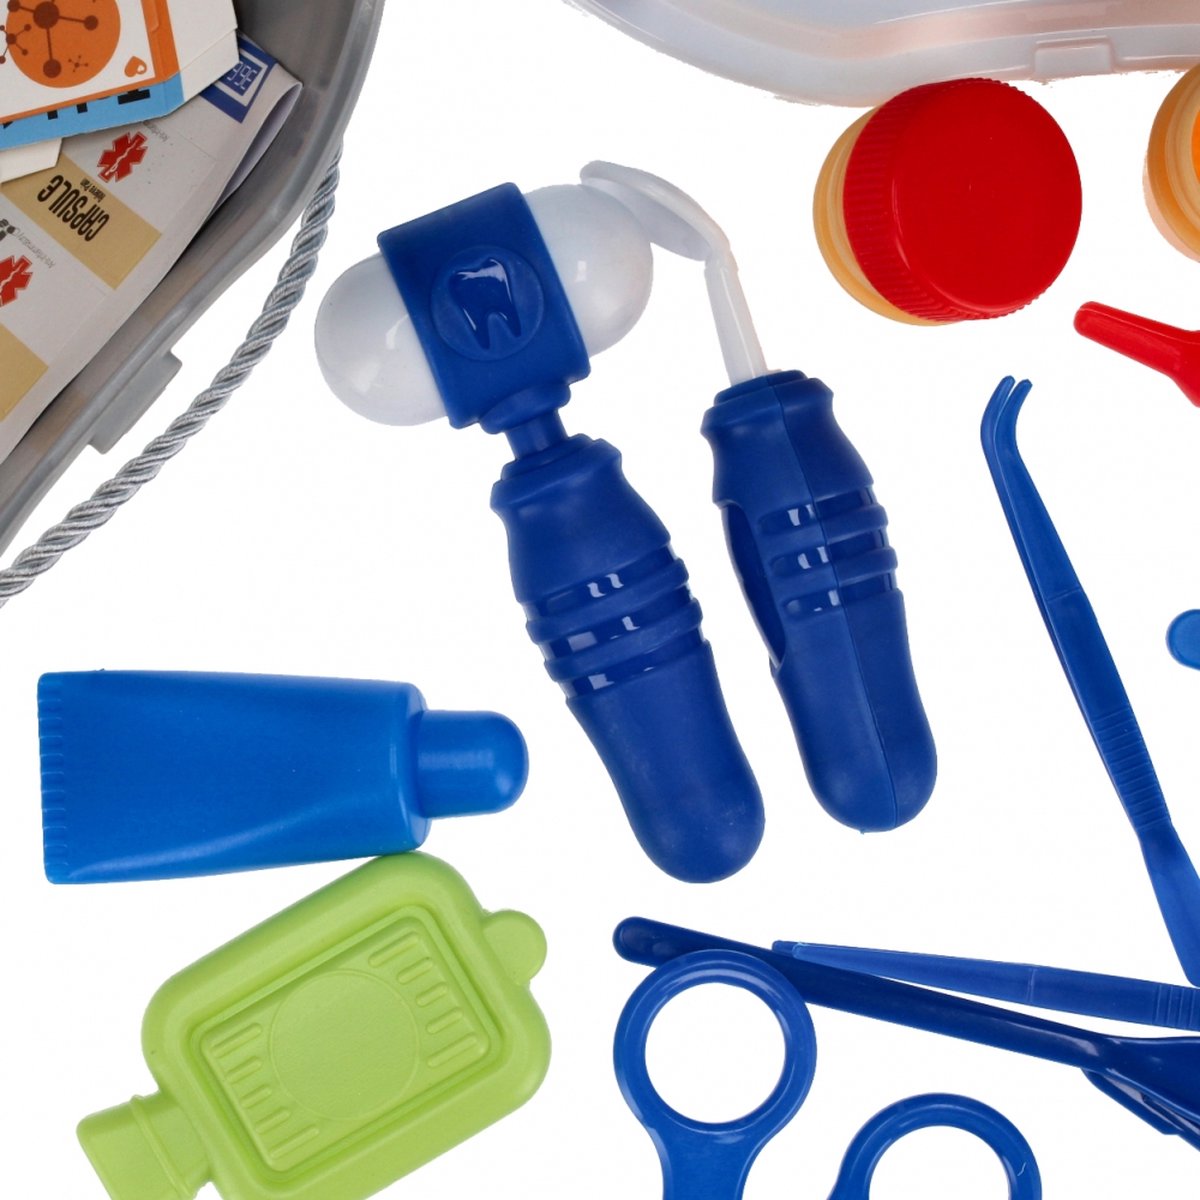 Ariko Spielzeugwagen Doctor 40 Teile - Blutdruckmessgerät, Schere, Medikamente, Untersuchungsutensilien und vieles mehr - praktischer Koffer mit Rollen